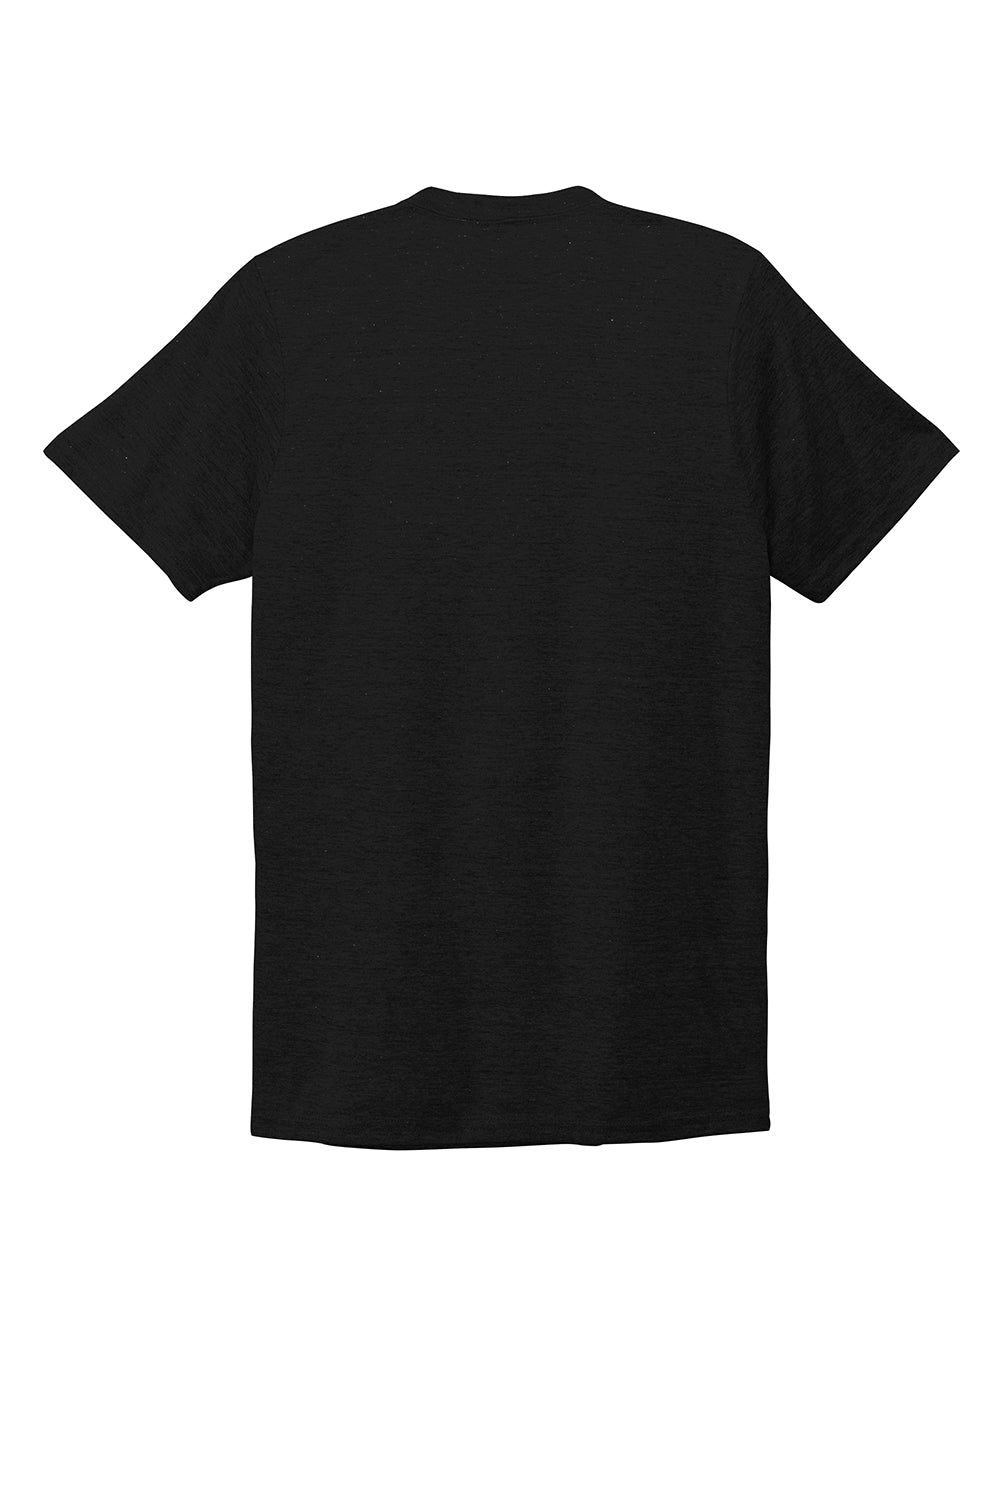 Allmade AL2014 Mens Short Sleeve V-Neck T-Shirt Deep Black Flat Back